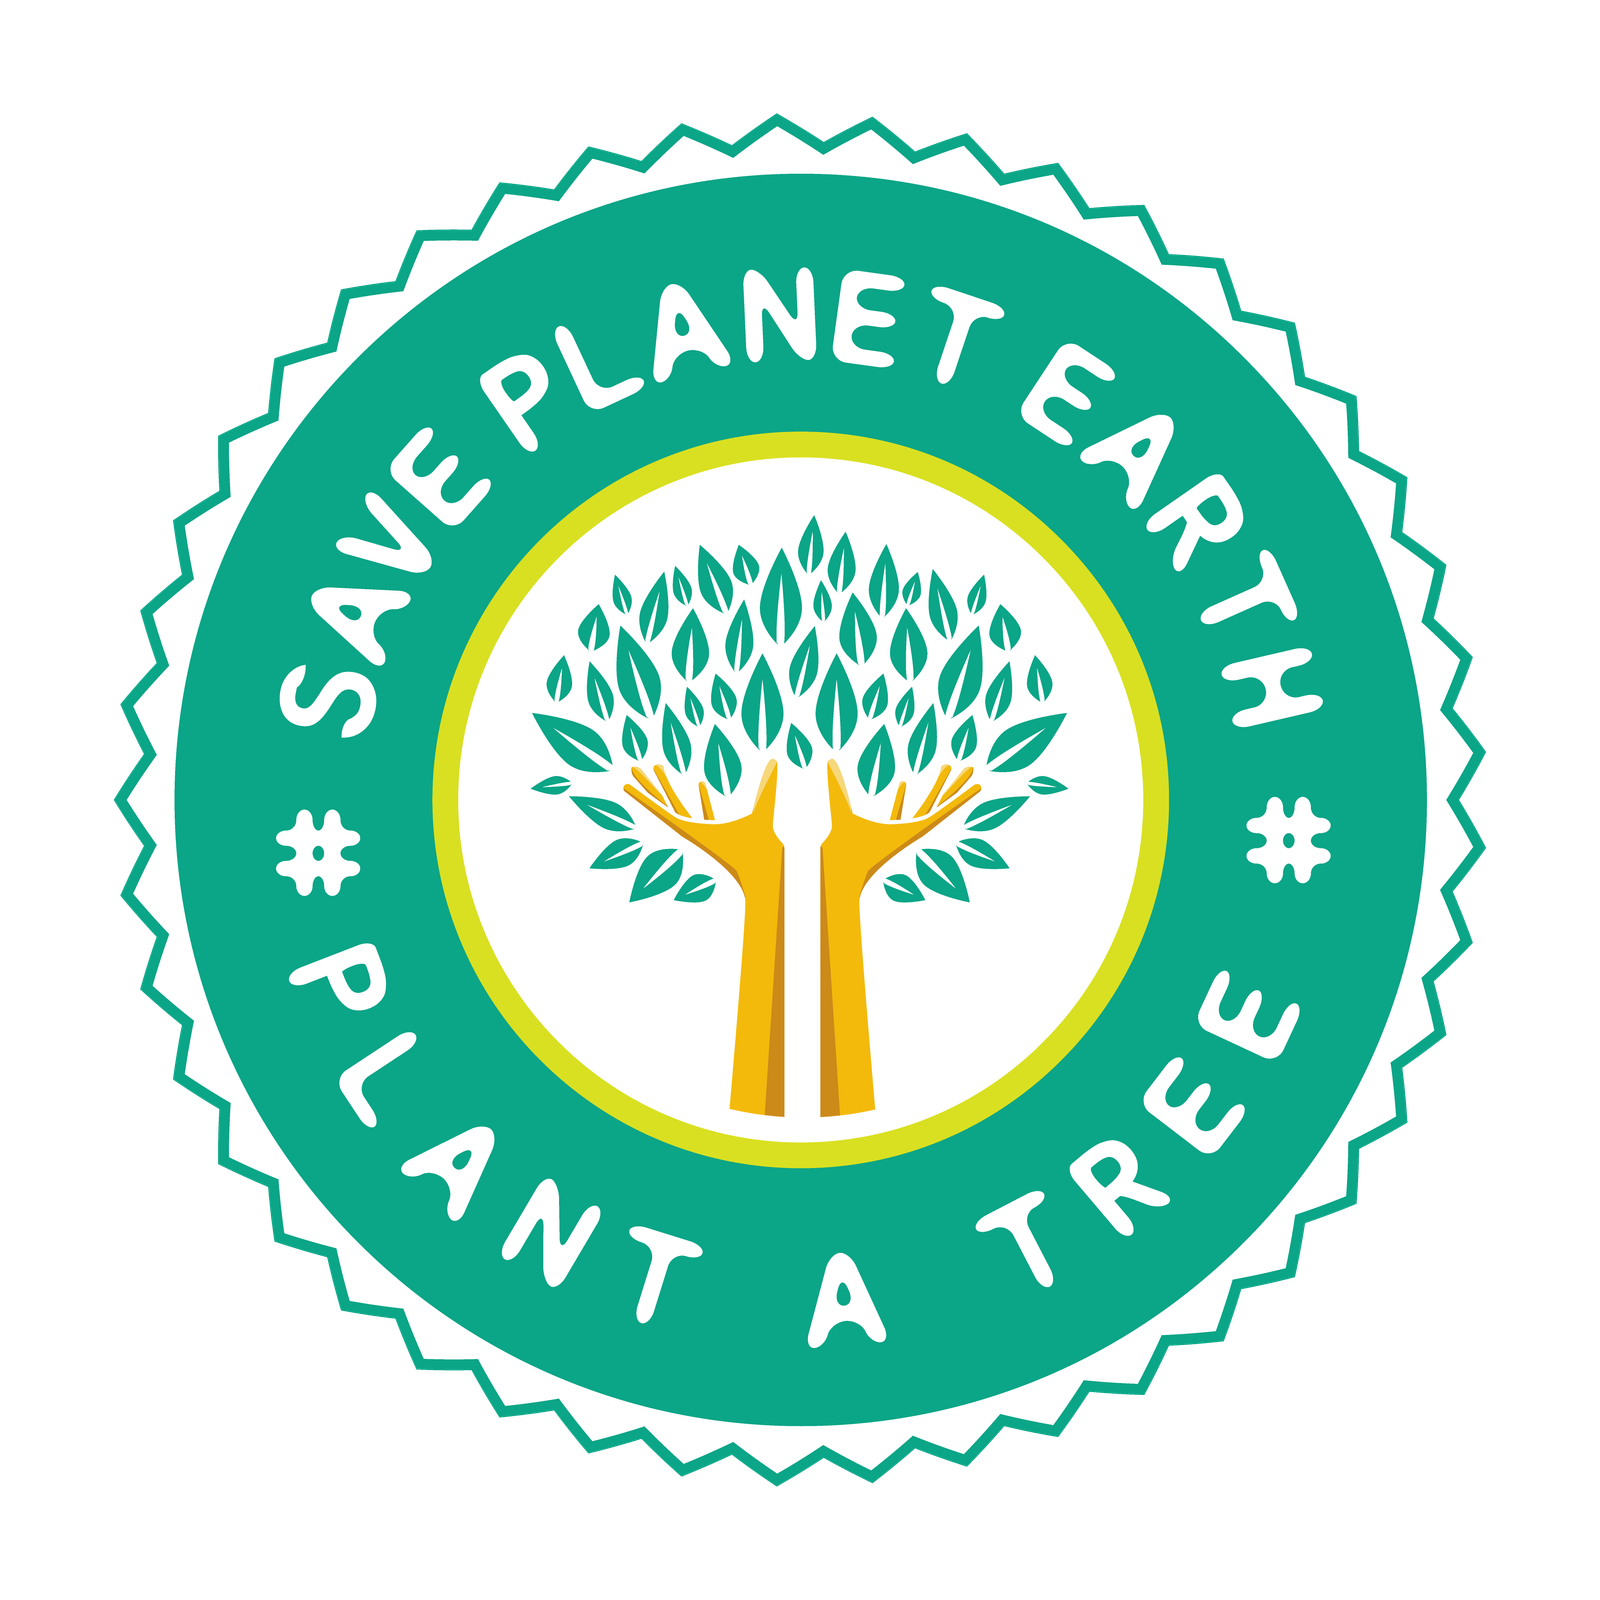 plant-a-tree-publicdomainvectors.org-01